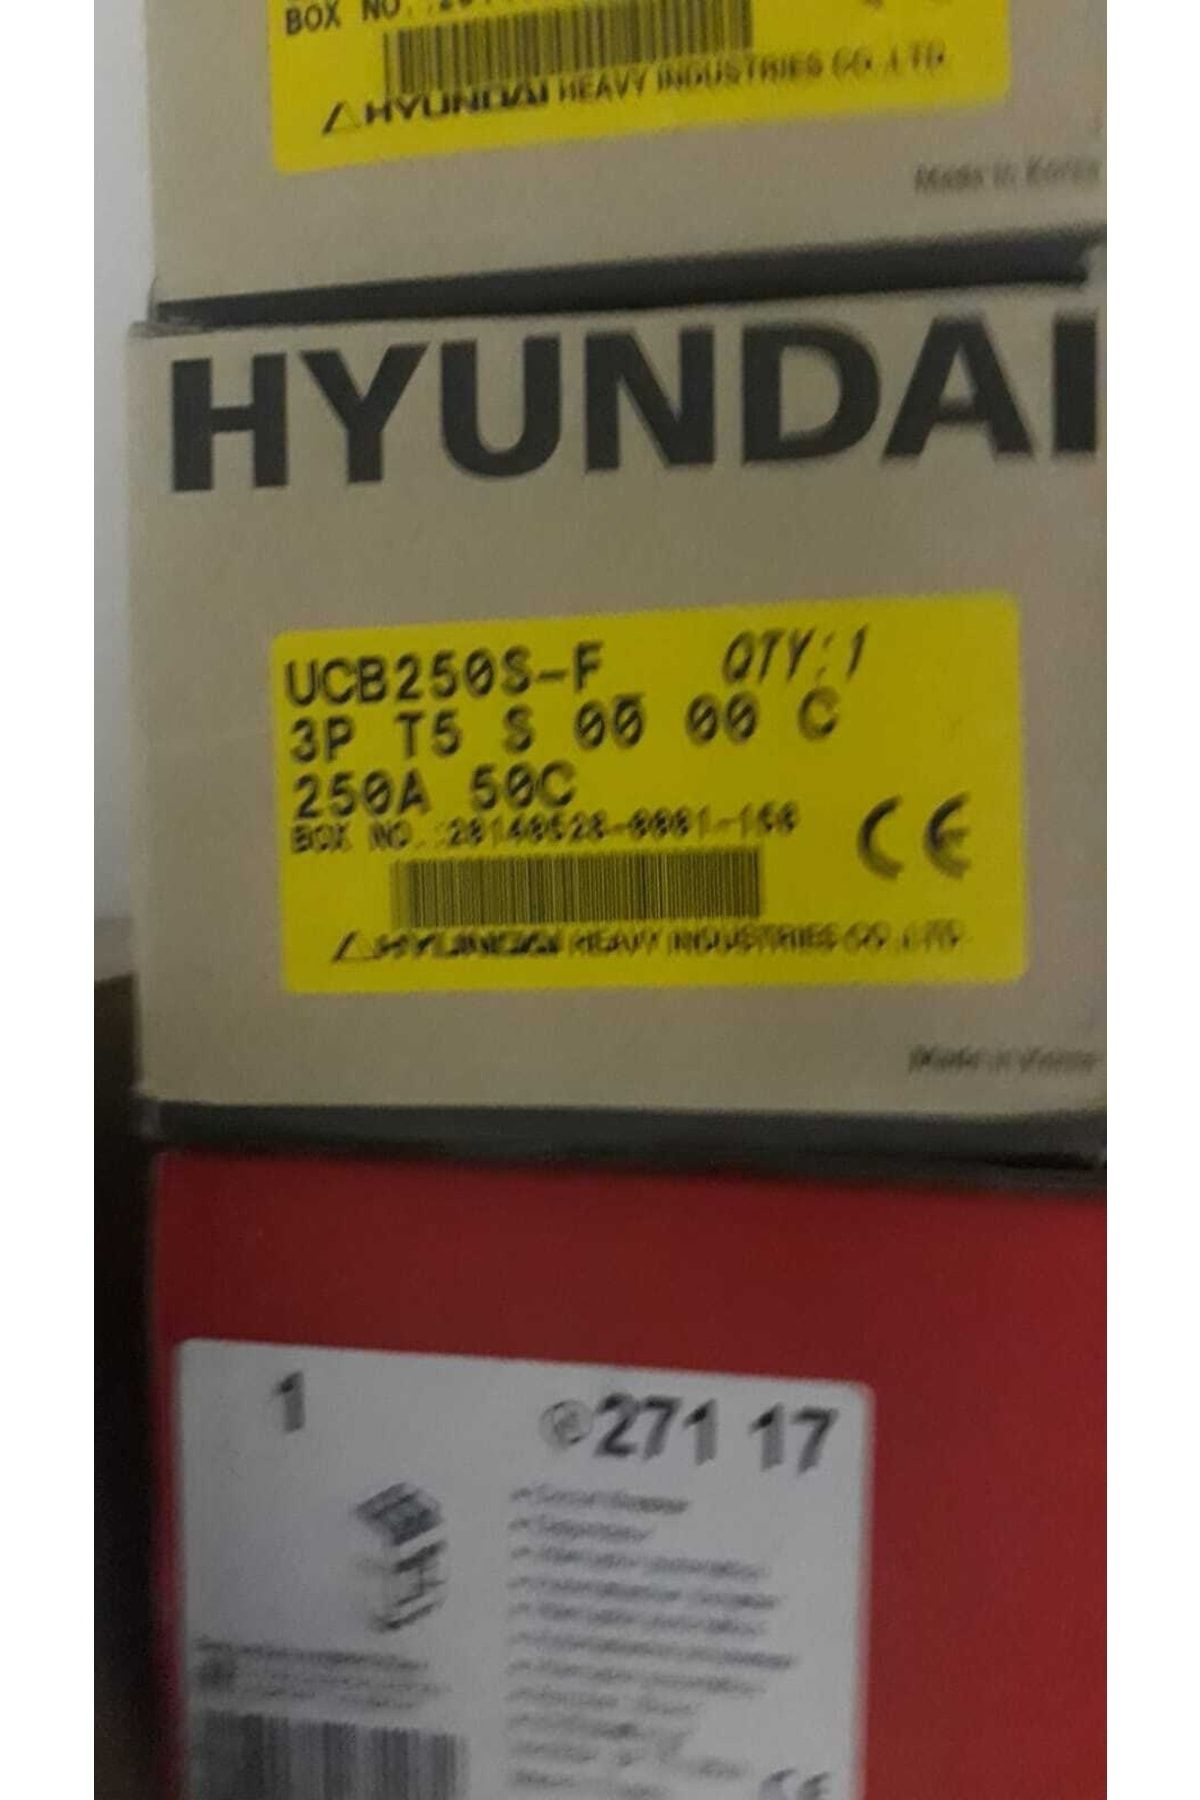 Hyundai 3p 250a